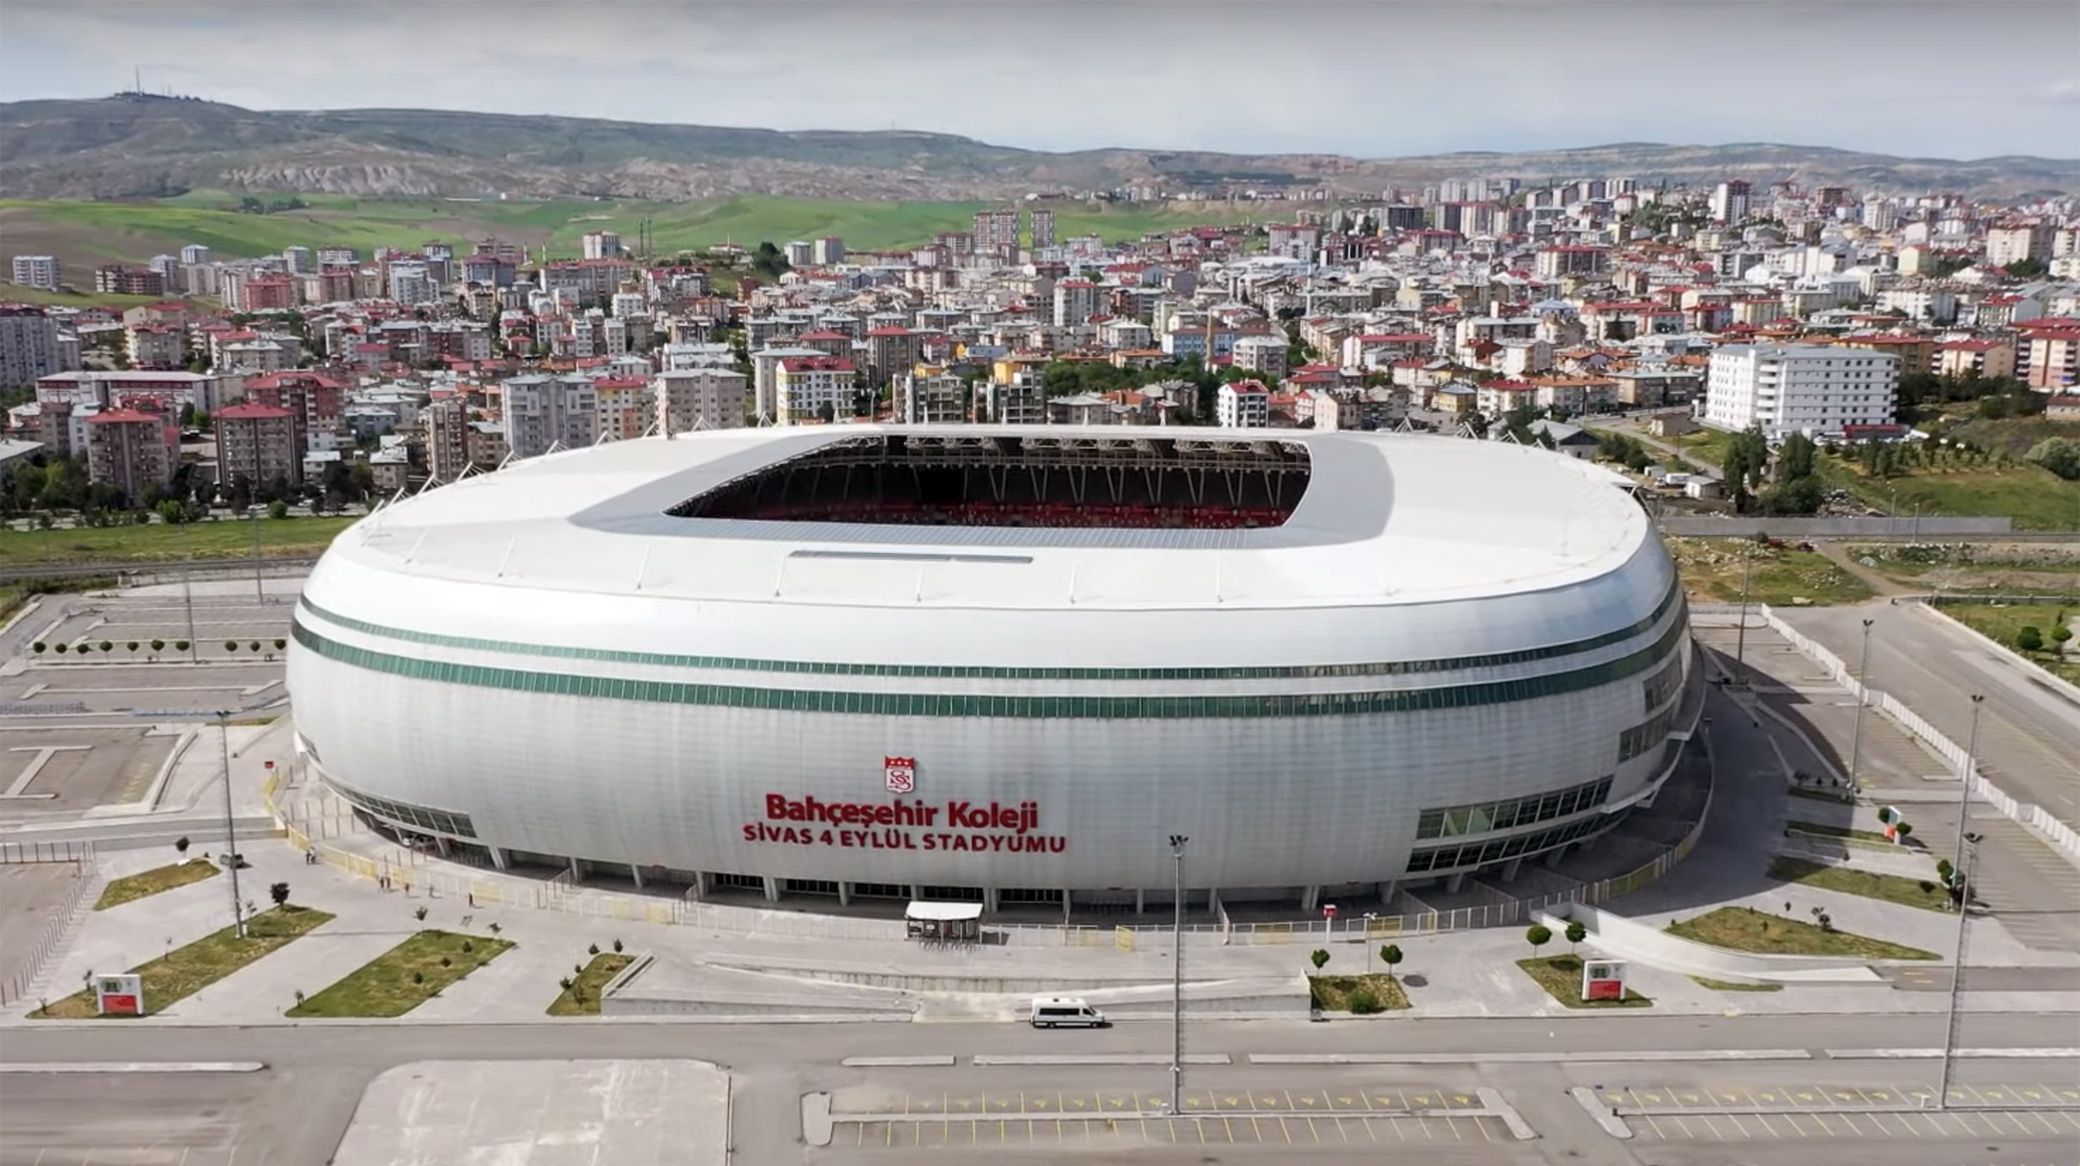 Yeni Sivas 4 Eylül Stadium